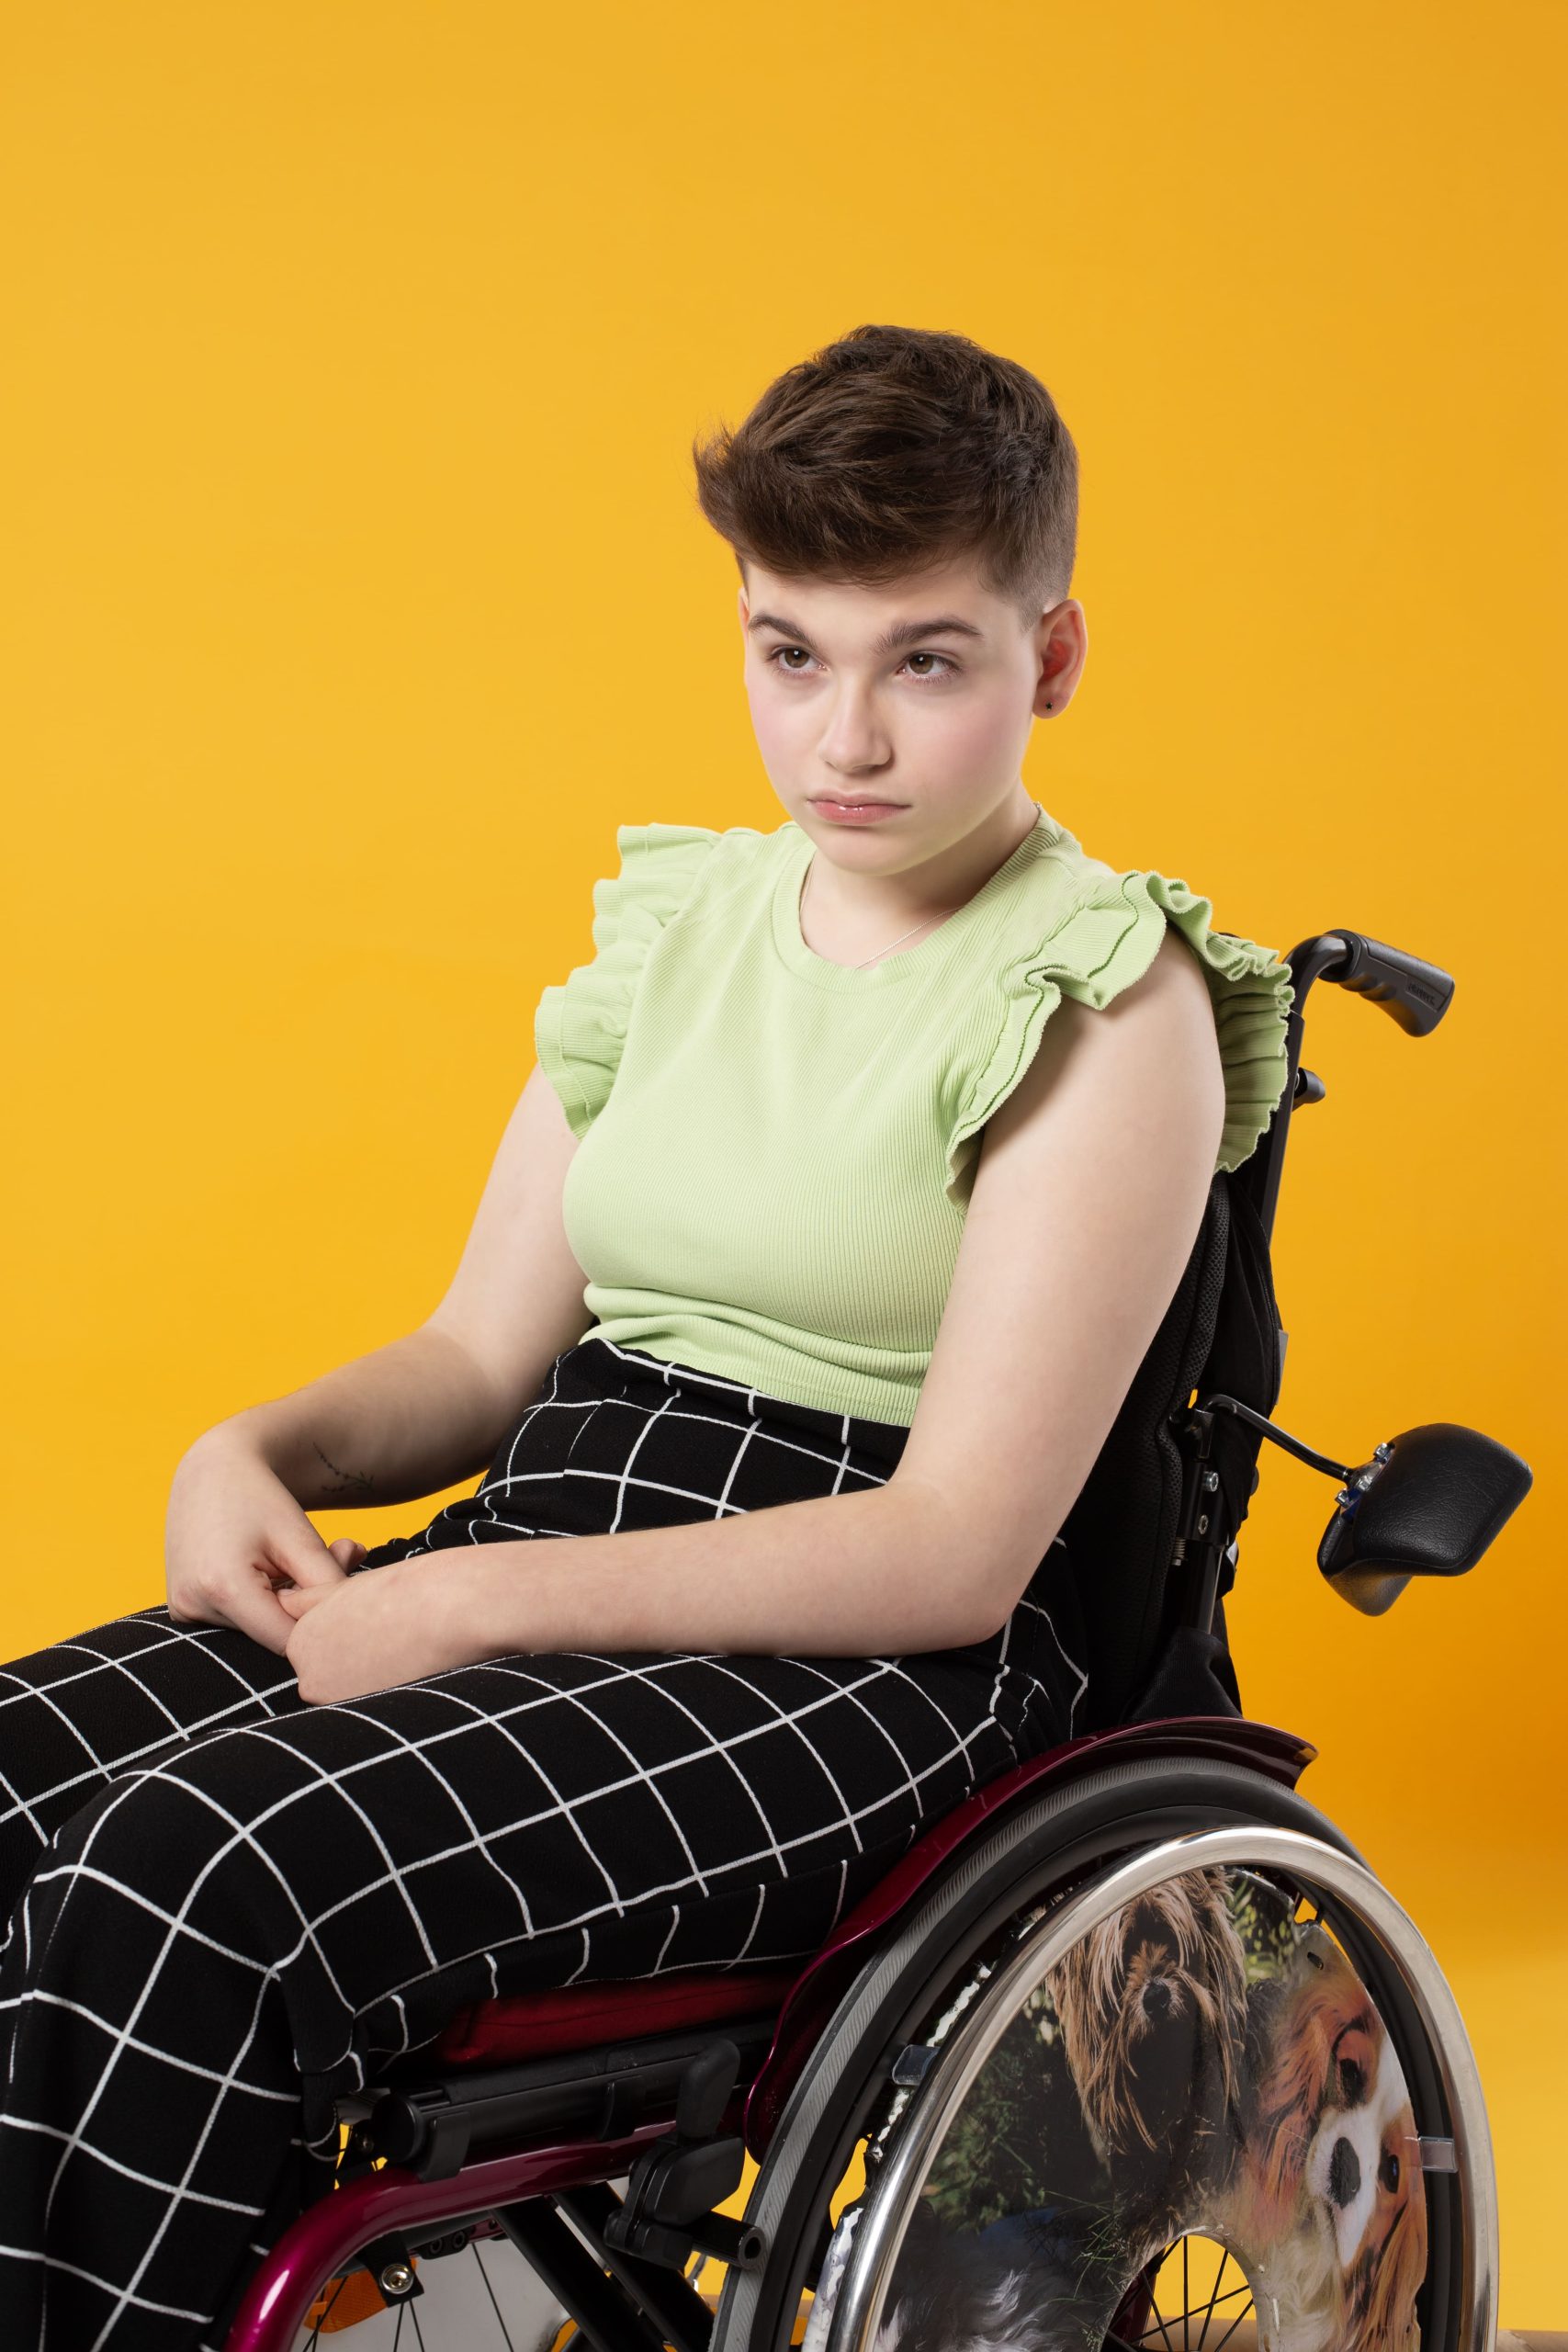 Zdjęcie przedstawia Gabrysię Miszta o krótko ściętych włosach ułożonych do góry, w spodniach i bluzce siedzącą na wózku ręcznym. Całość na żółtym tle.